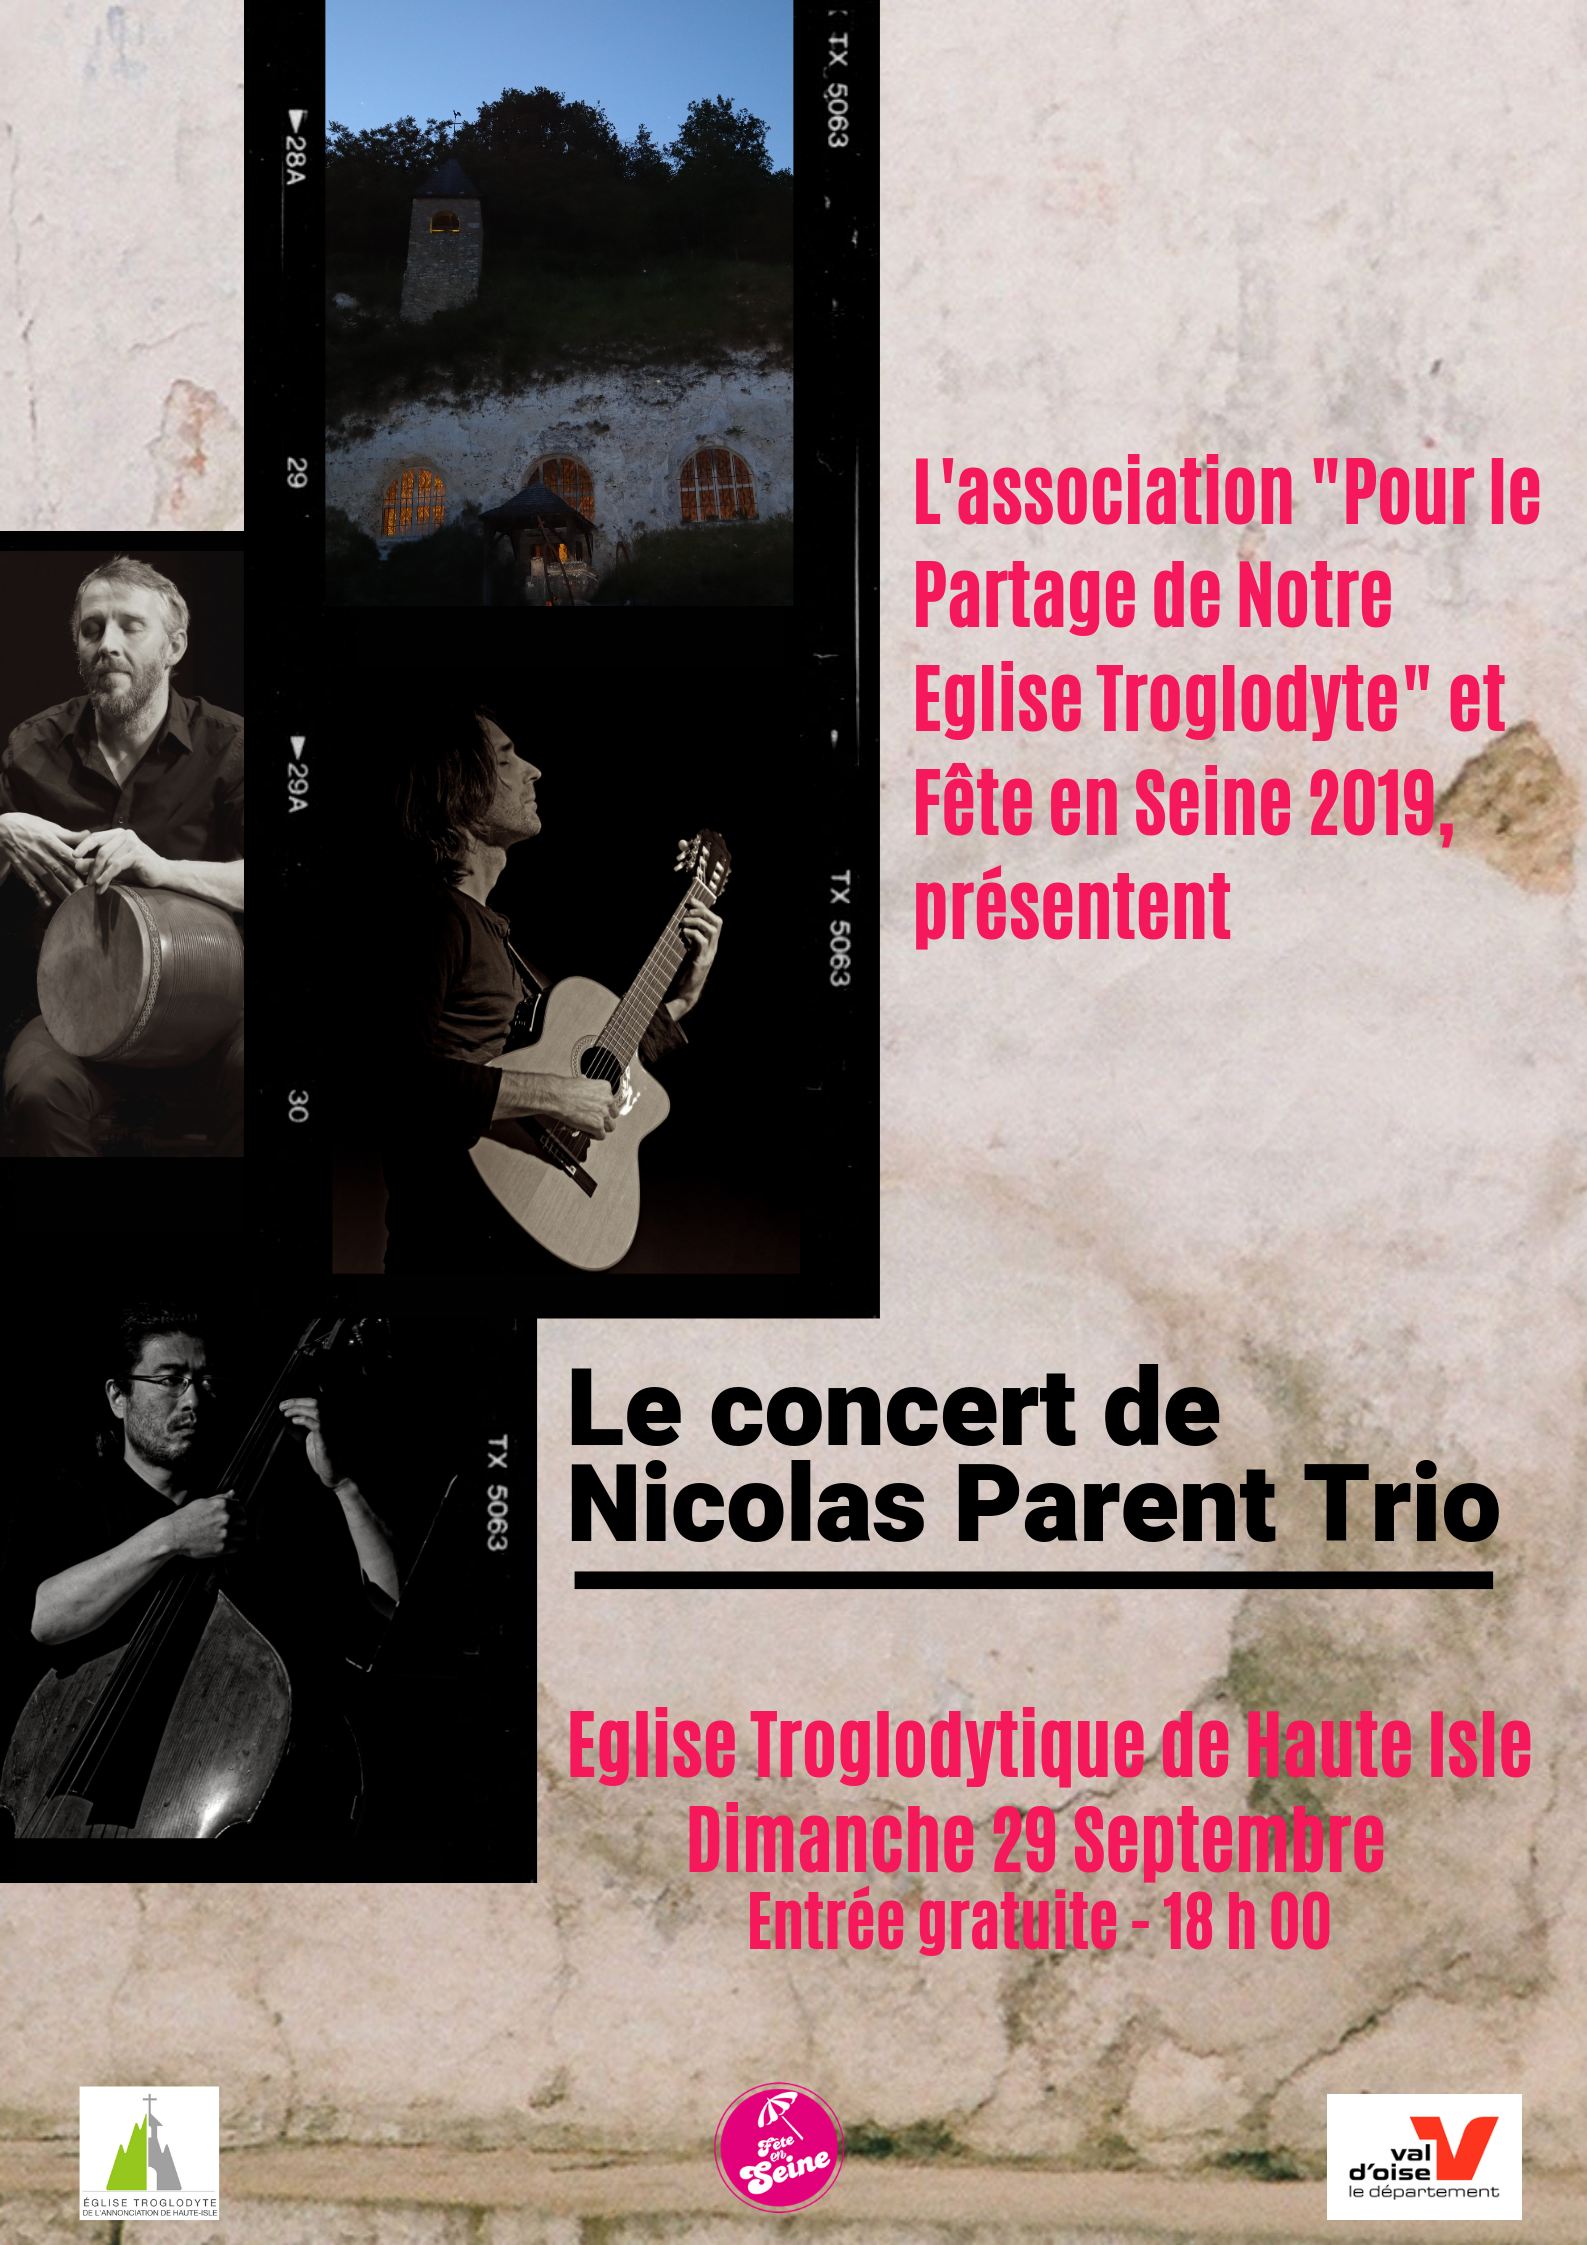 Annonce Concert Nicolas Parent Trio à Haute Isle le 29 Septembre 2019 - 18 heures